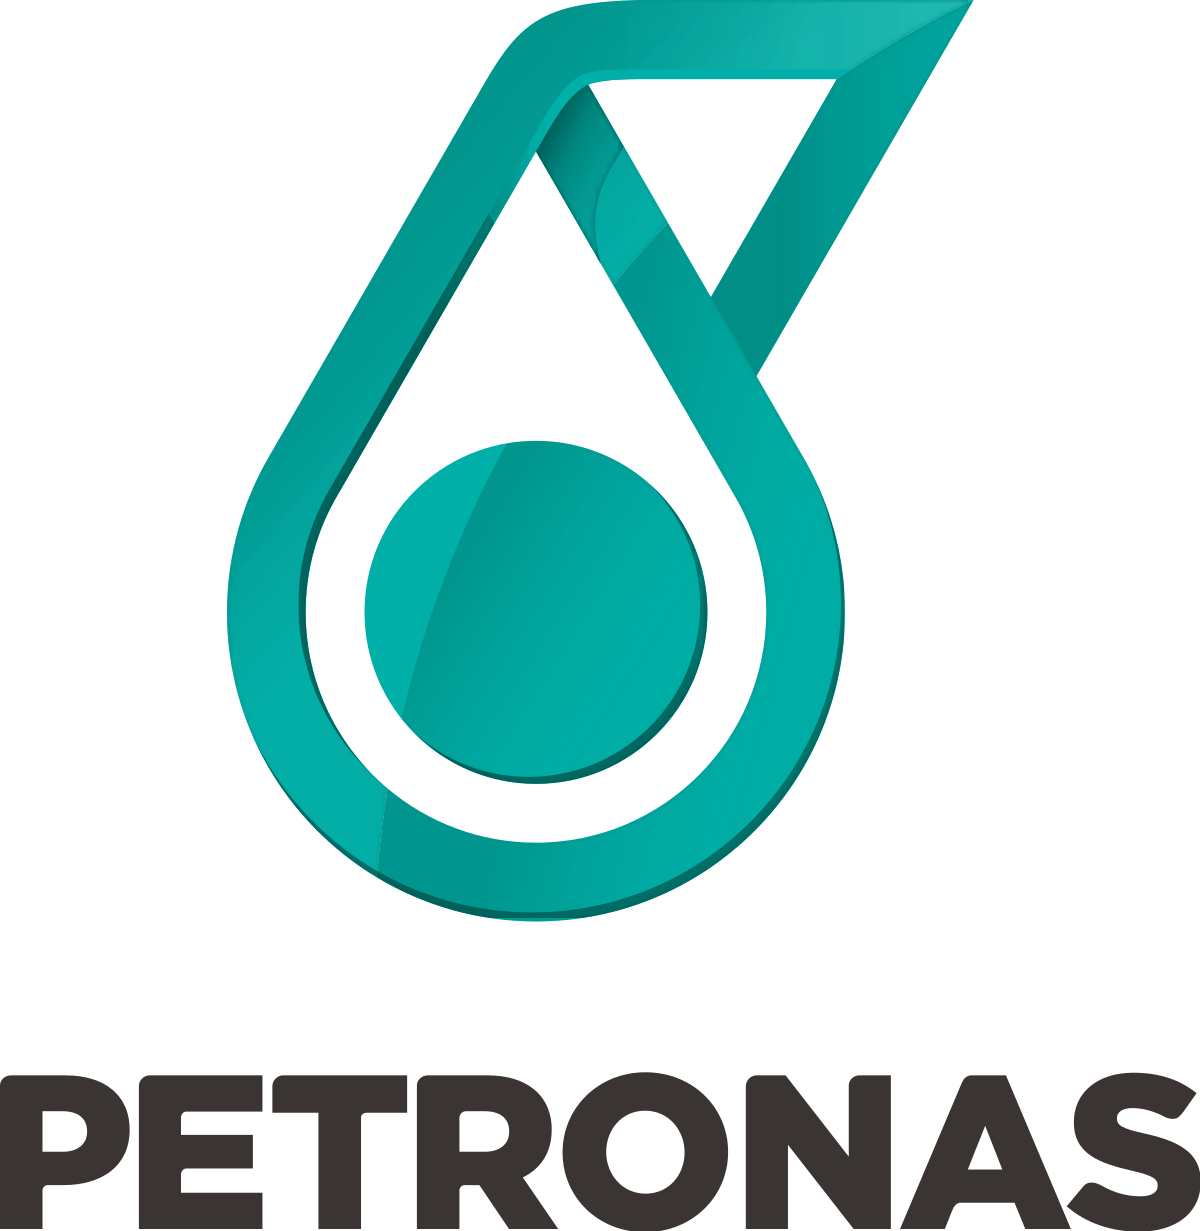 Service Oil Company Logo - Petronas